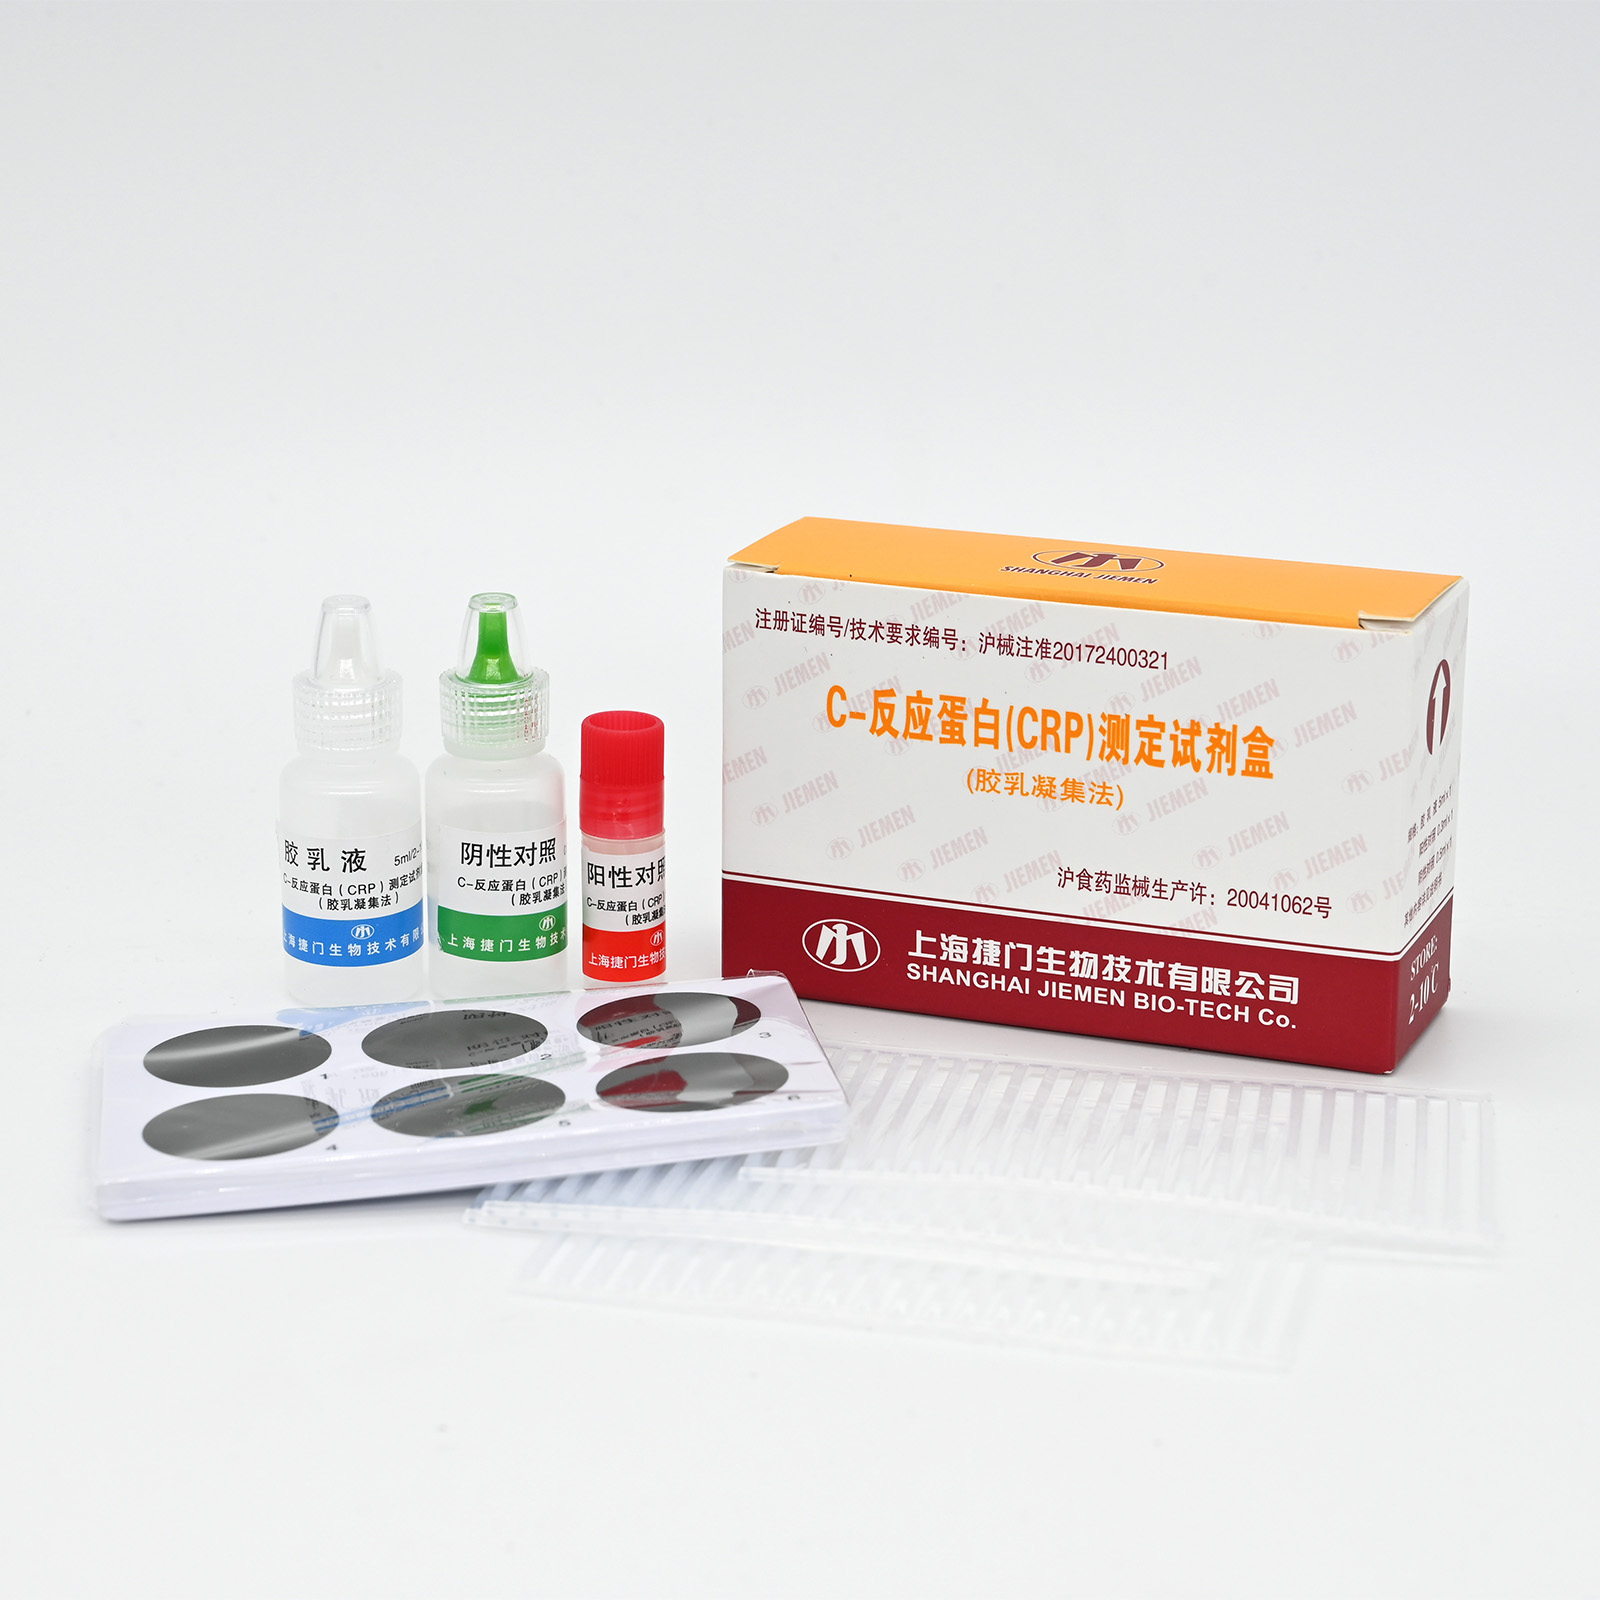 【捷门】C-反应蛋白(CRP)测定试剂盒(胶乳凝集法)-云医购